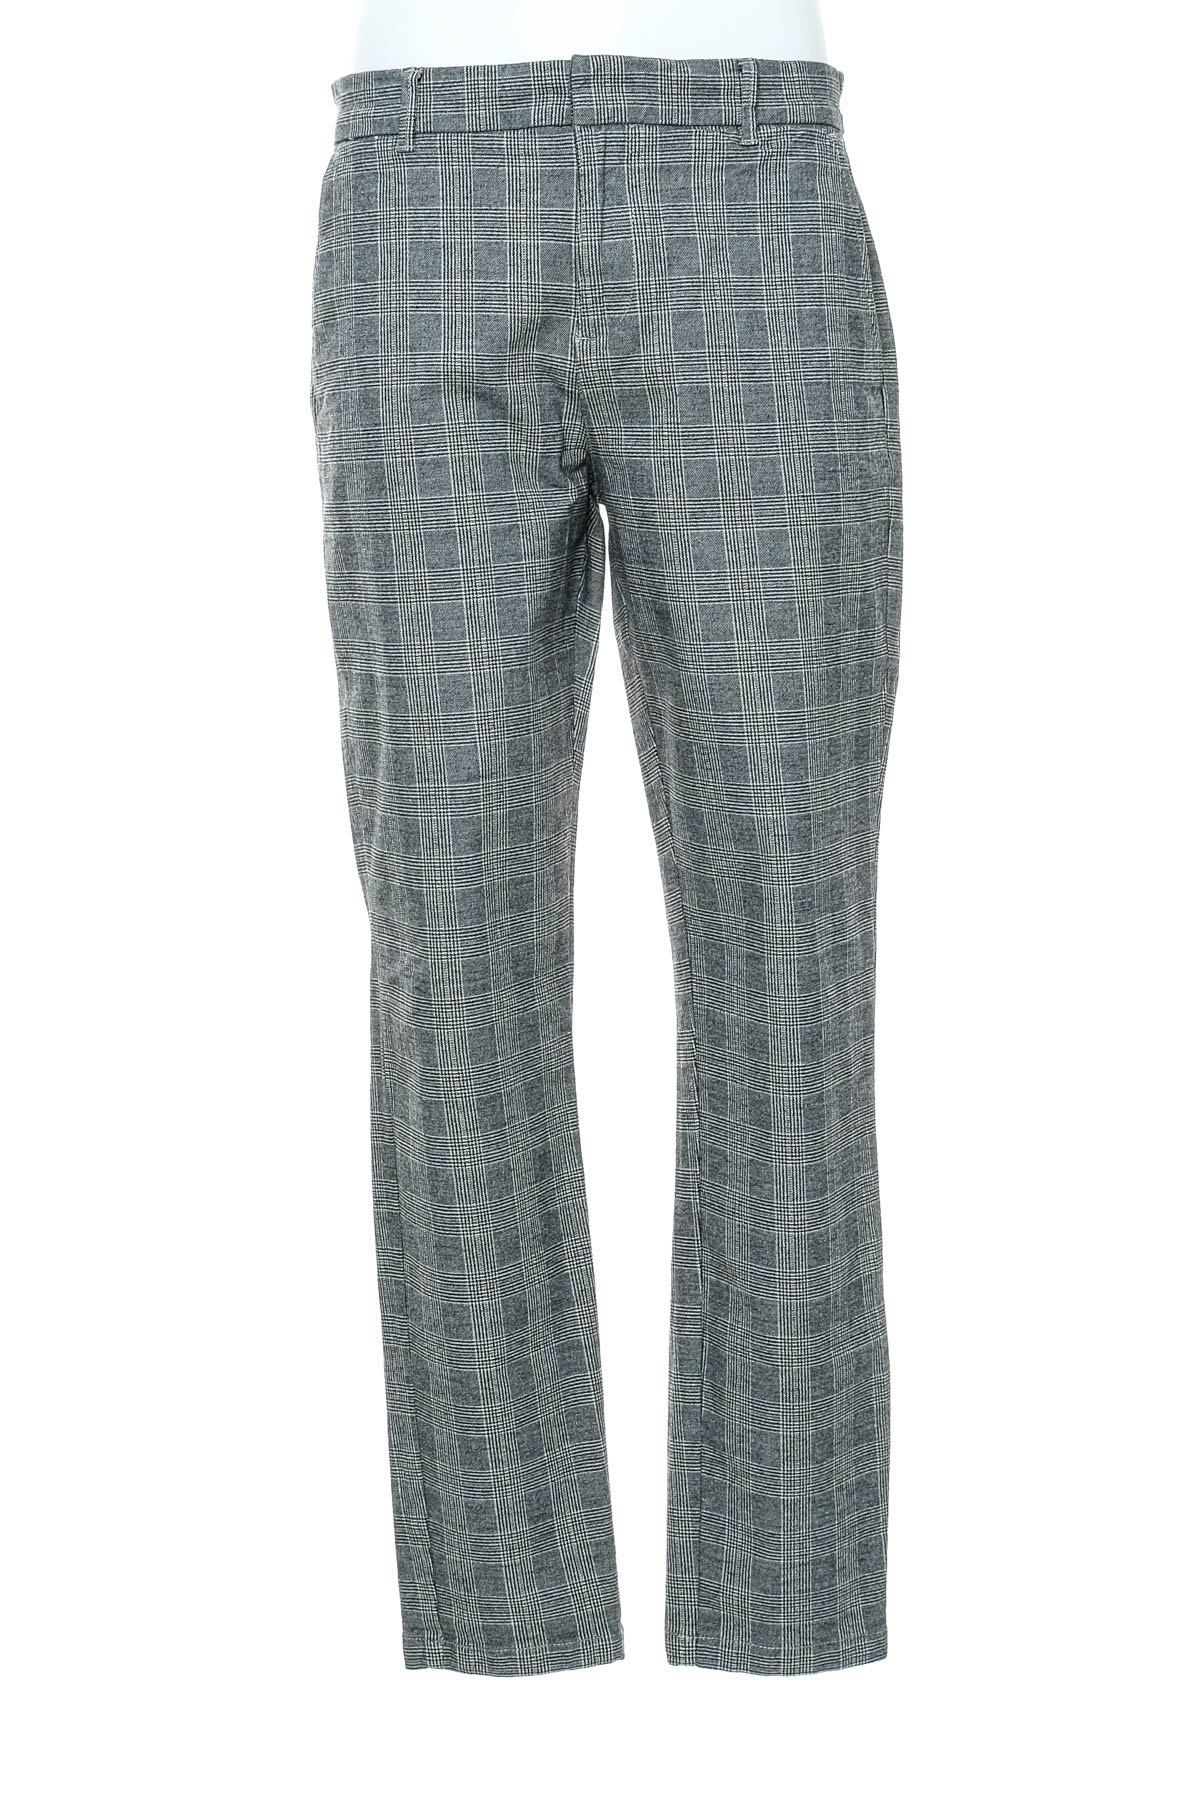 Pantalon pentru bărbați - Denim Co. - 0